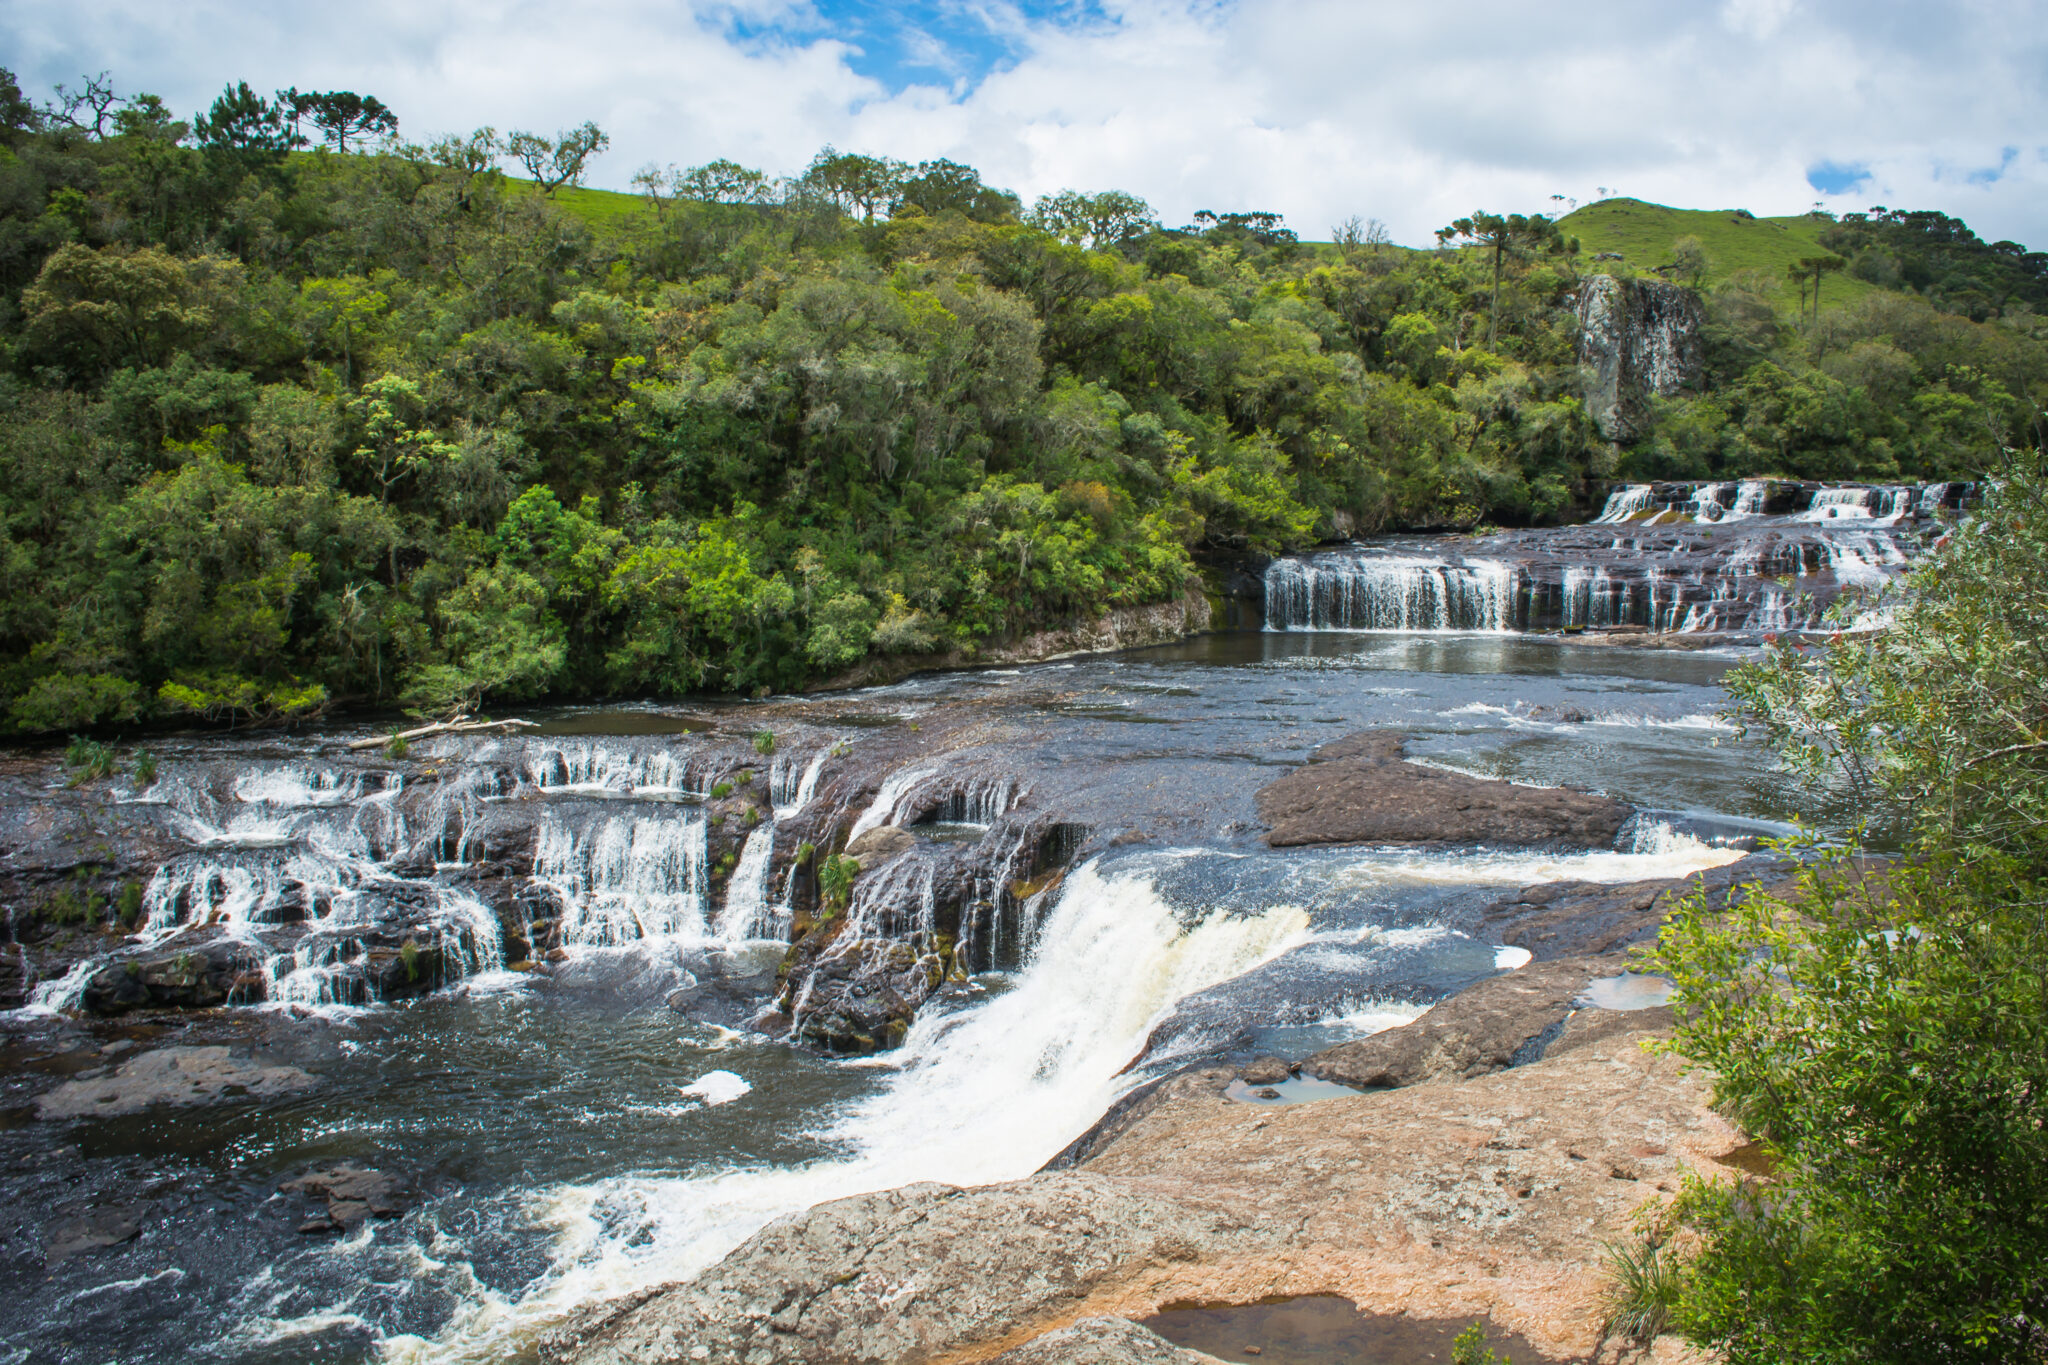 DSC0159 scaled - Parque das 8 Cachoeiras: Um achado na serra gaúcha